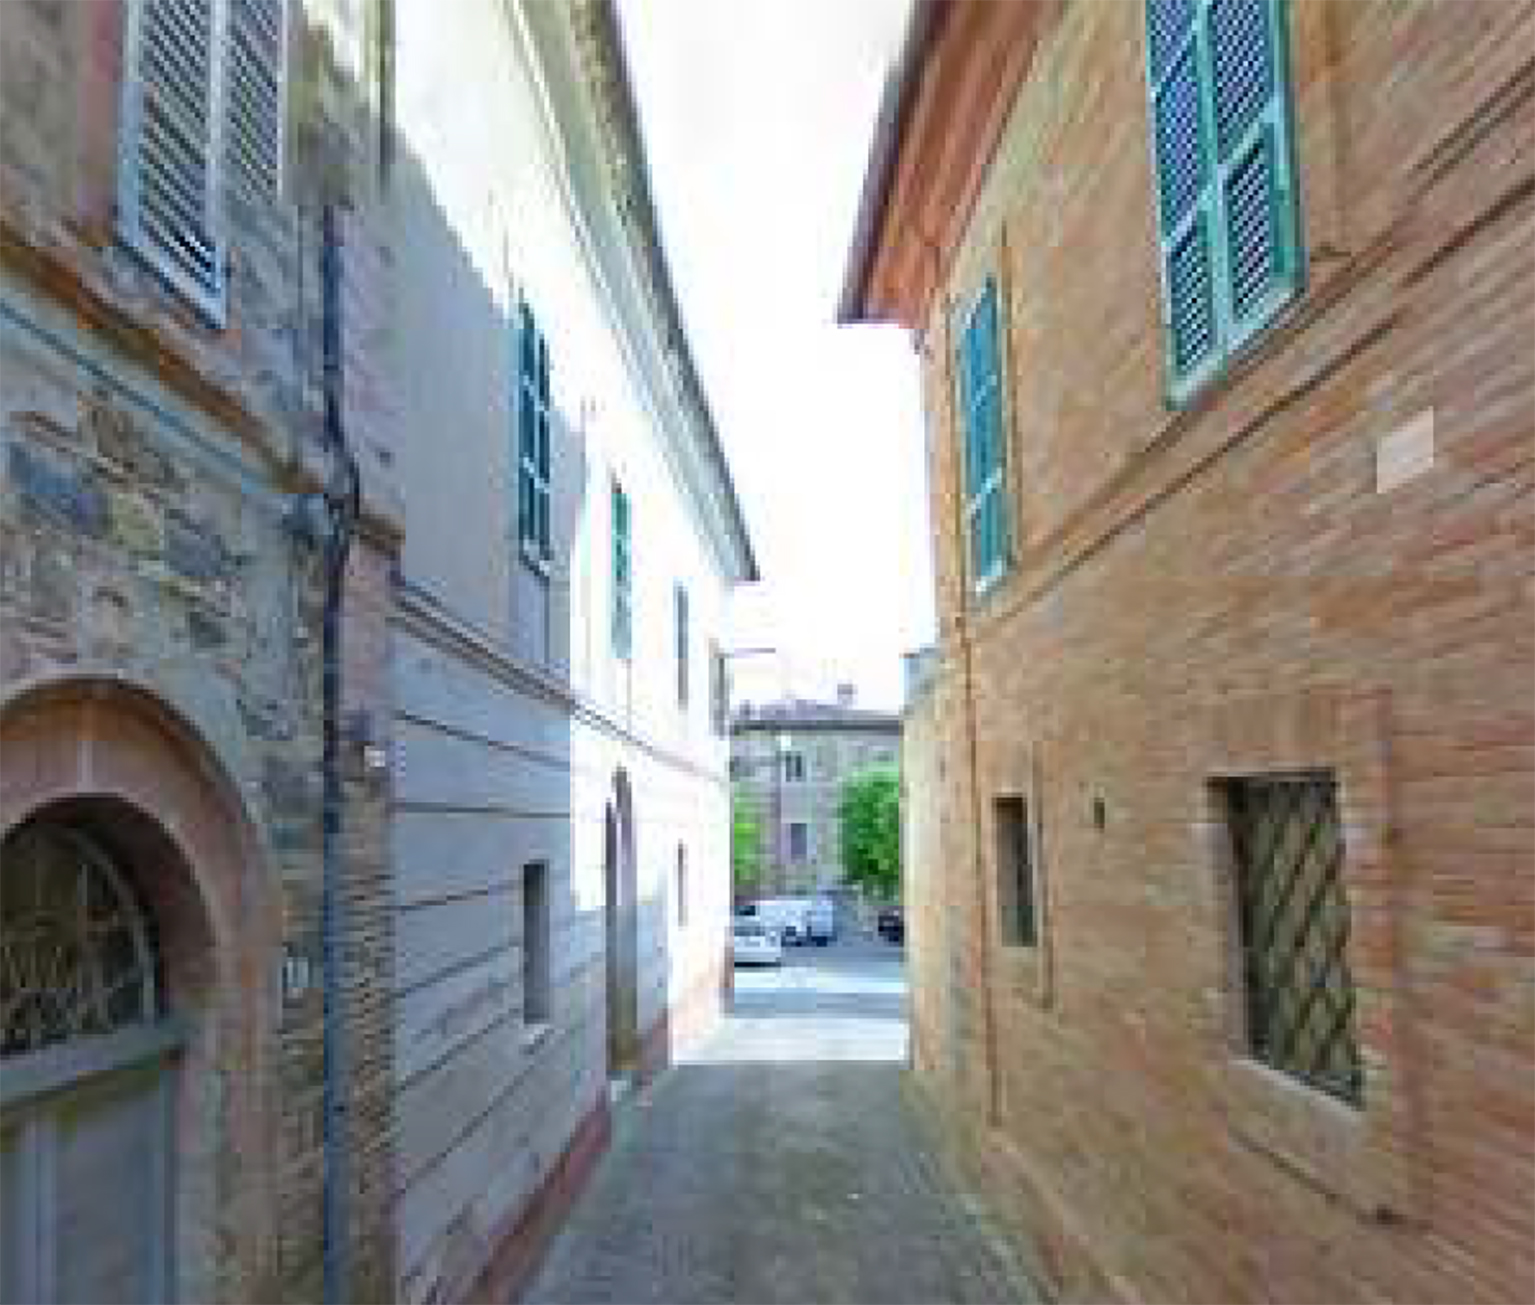 Palazzo Santolini (palazzo, signorile) - Belforte del Chienti (MC) 